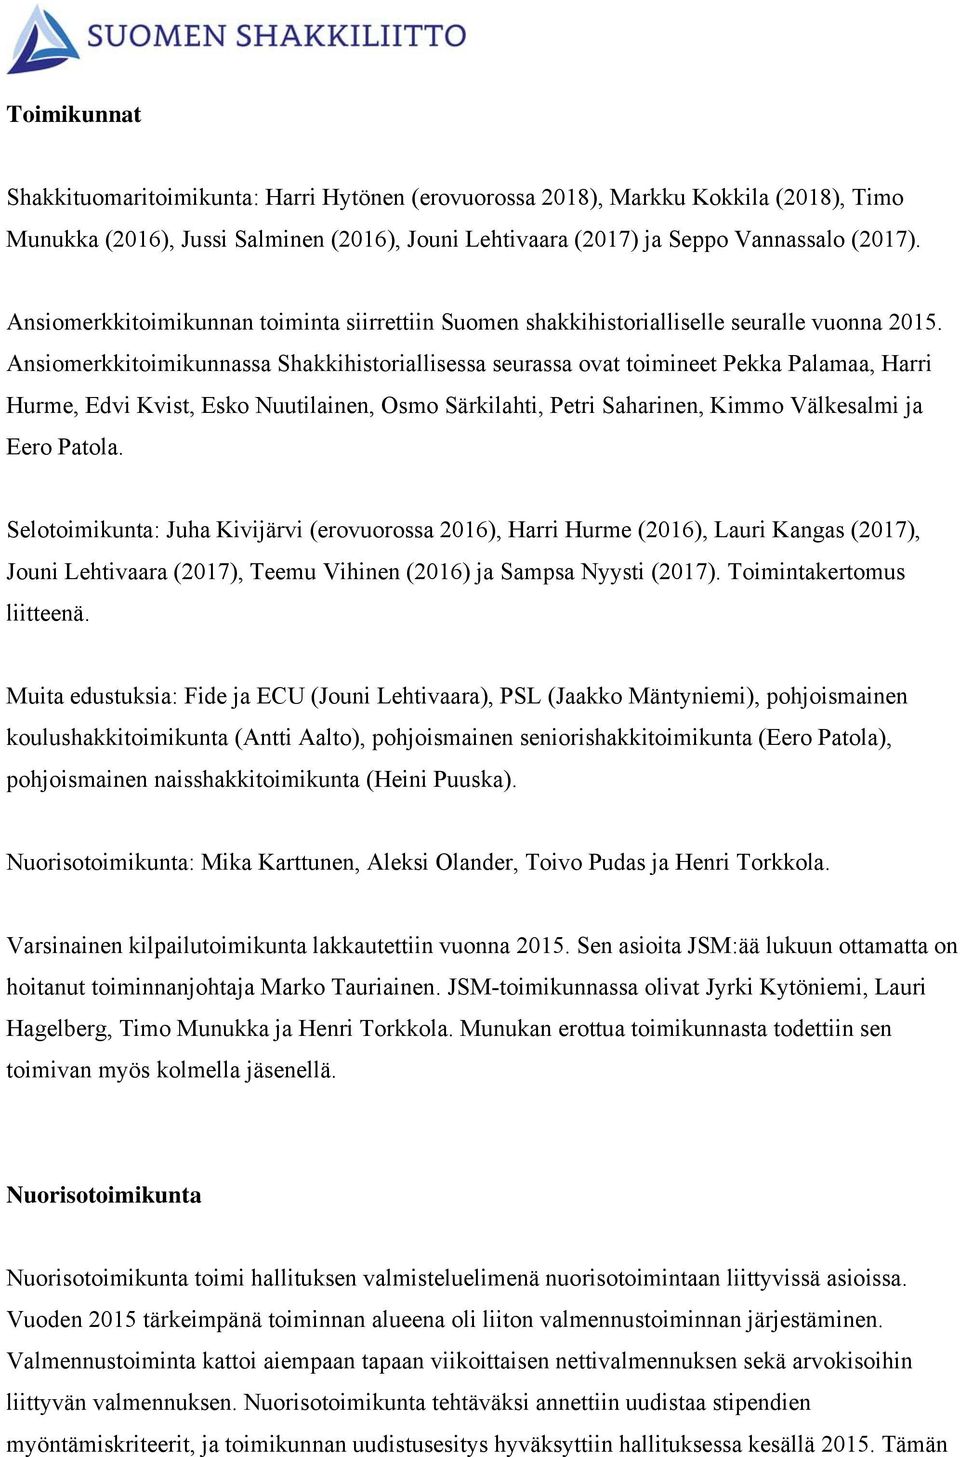 Ansiomerkkitoimikunnassa Shakkihistoriallisessa seurassa ovat toimineet Pekka Palamaa, Harri Hurme, Edvi Kvist, Esko Nuutilainen, Osmo Särkilahti, Petri Saharinen, Kimmo Välkesalmi ja Eero Patola.